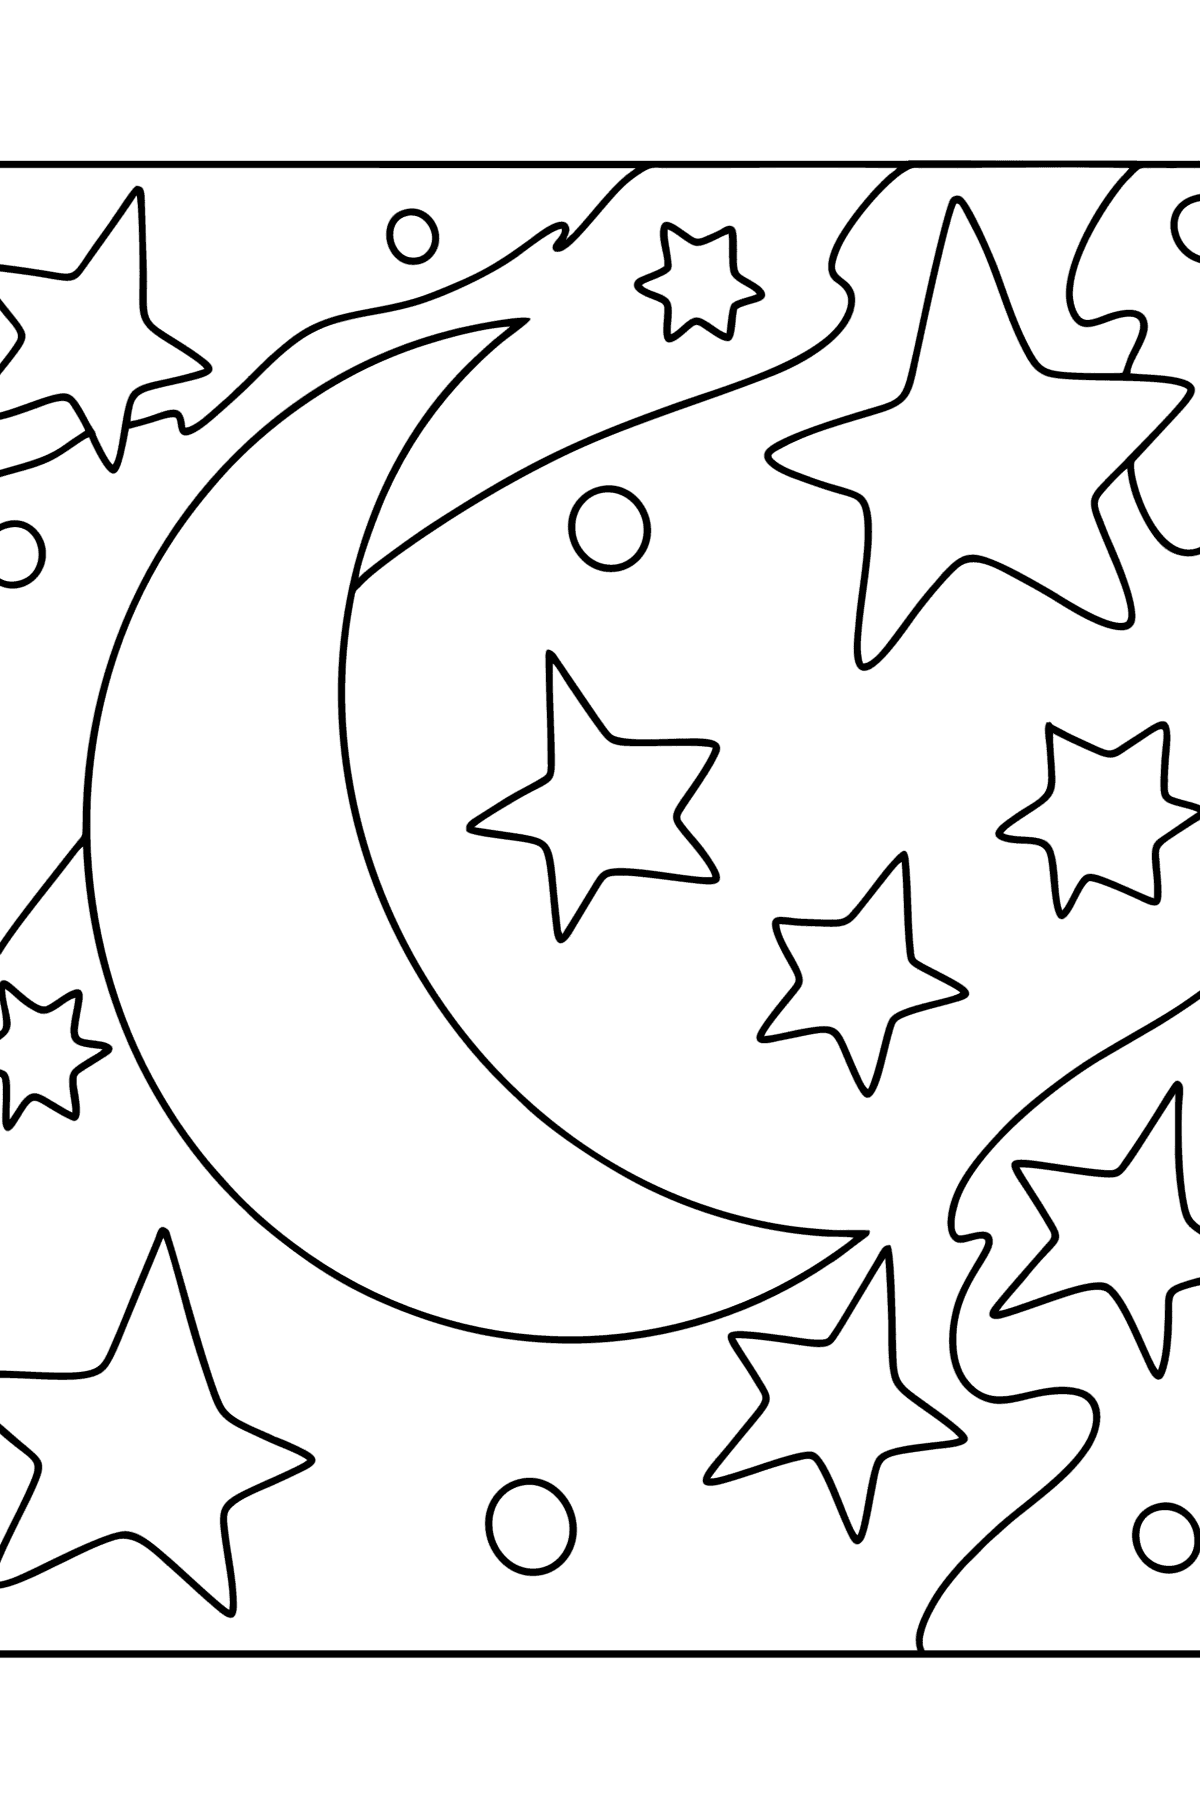 Luna și stele desen de colorat - Desene de colorat pentru copii